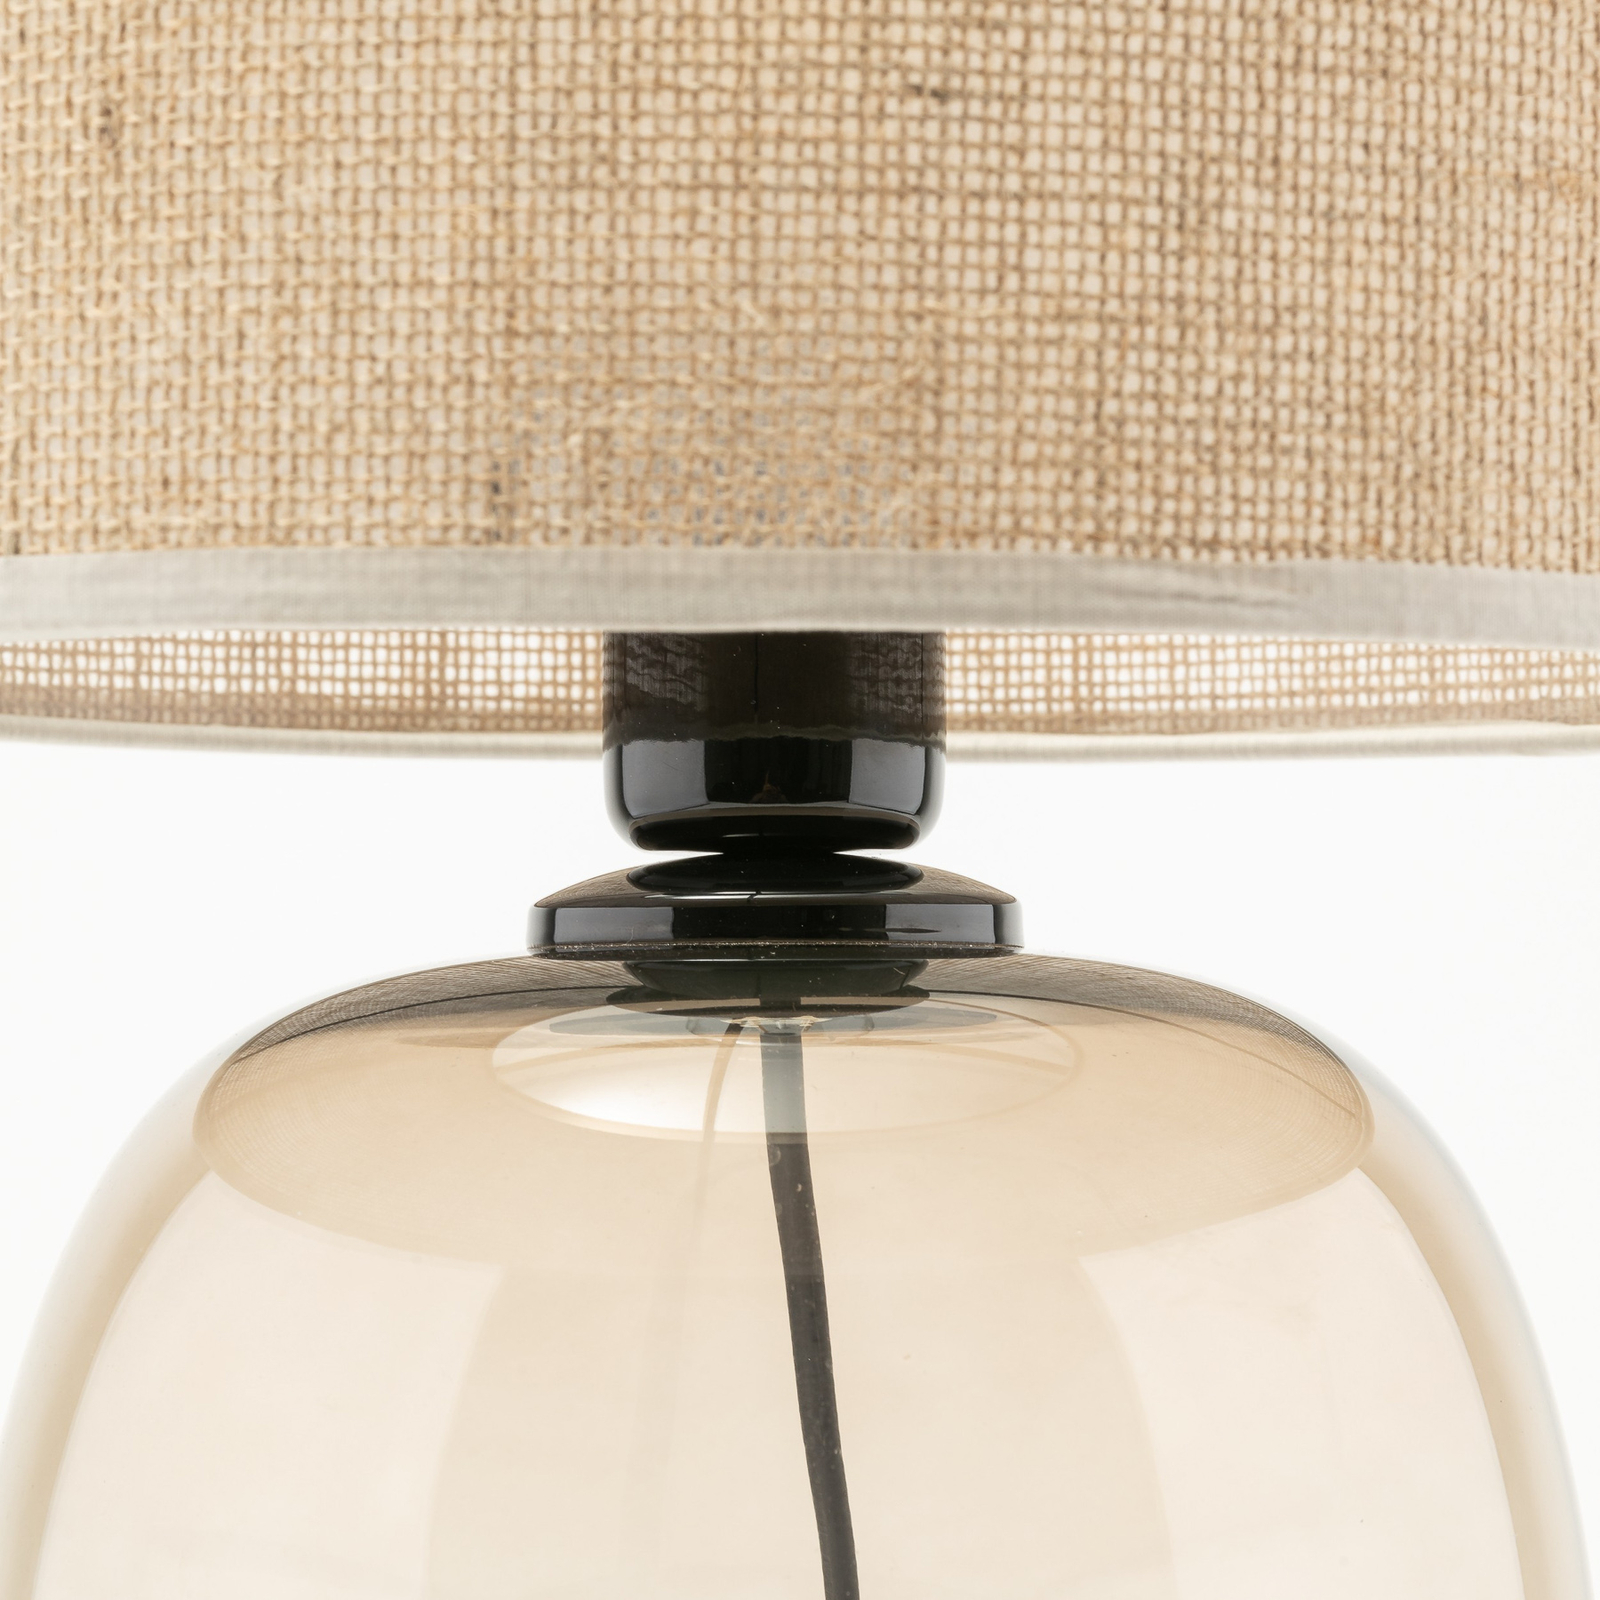 Melody bordlampe, høyde 48 cm, brunt glass, naturlig jute